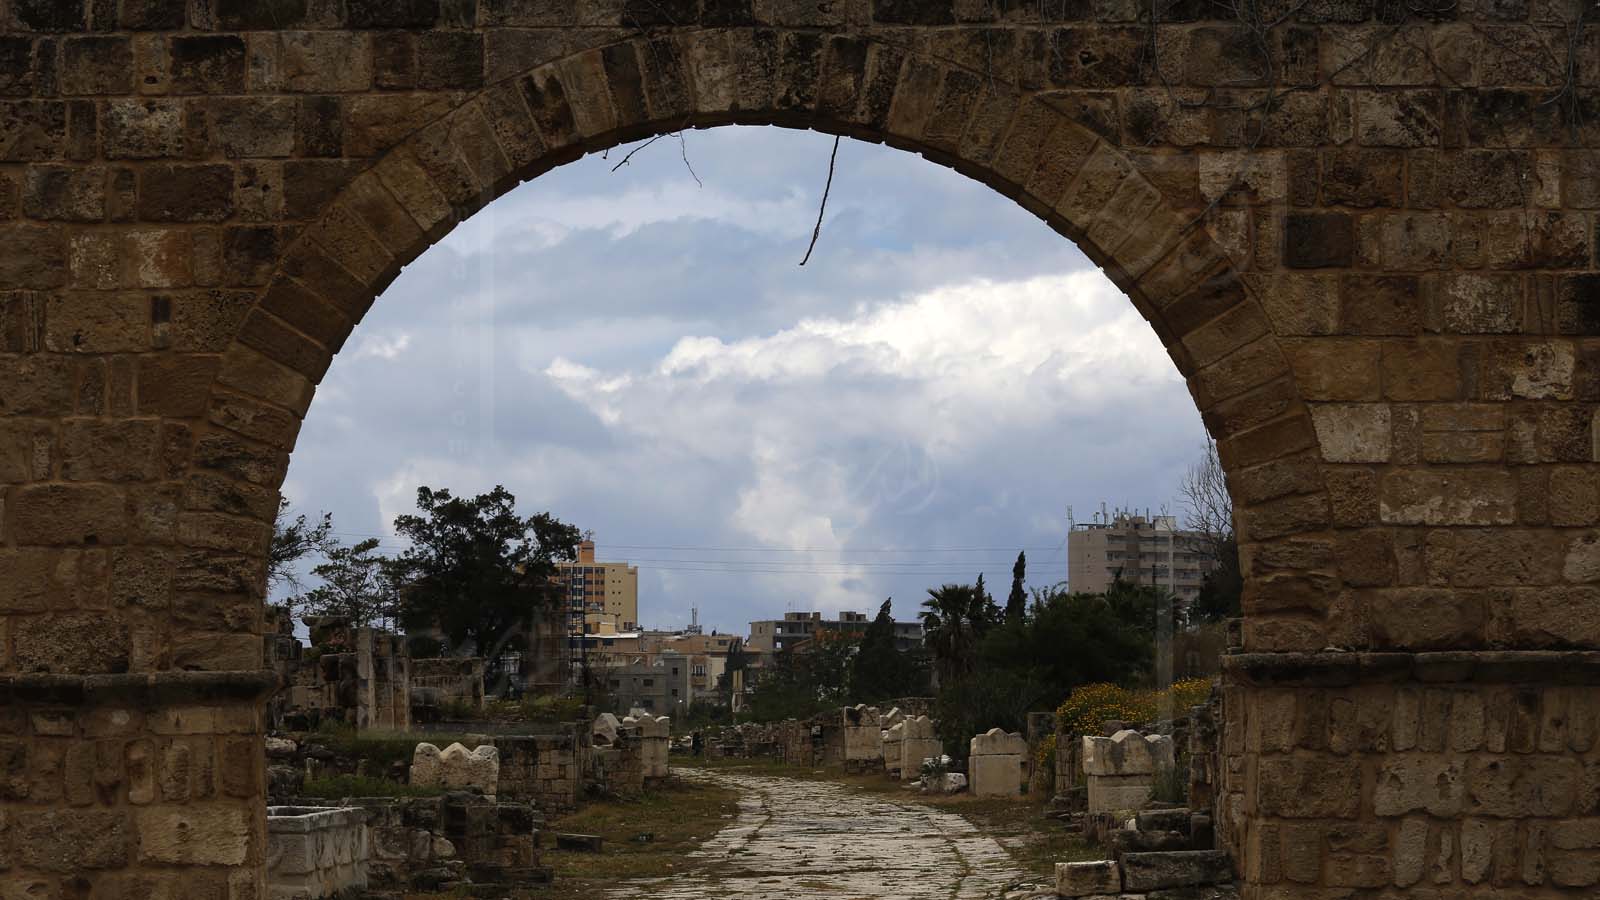 نقل البيزنطيون مقابر الموتى الى داخل المدينة، بخلاف الثقافة الرومانية (علي علوش)